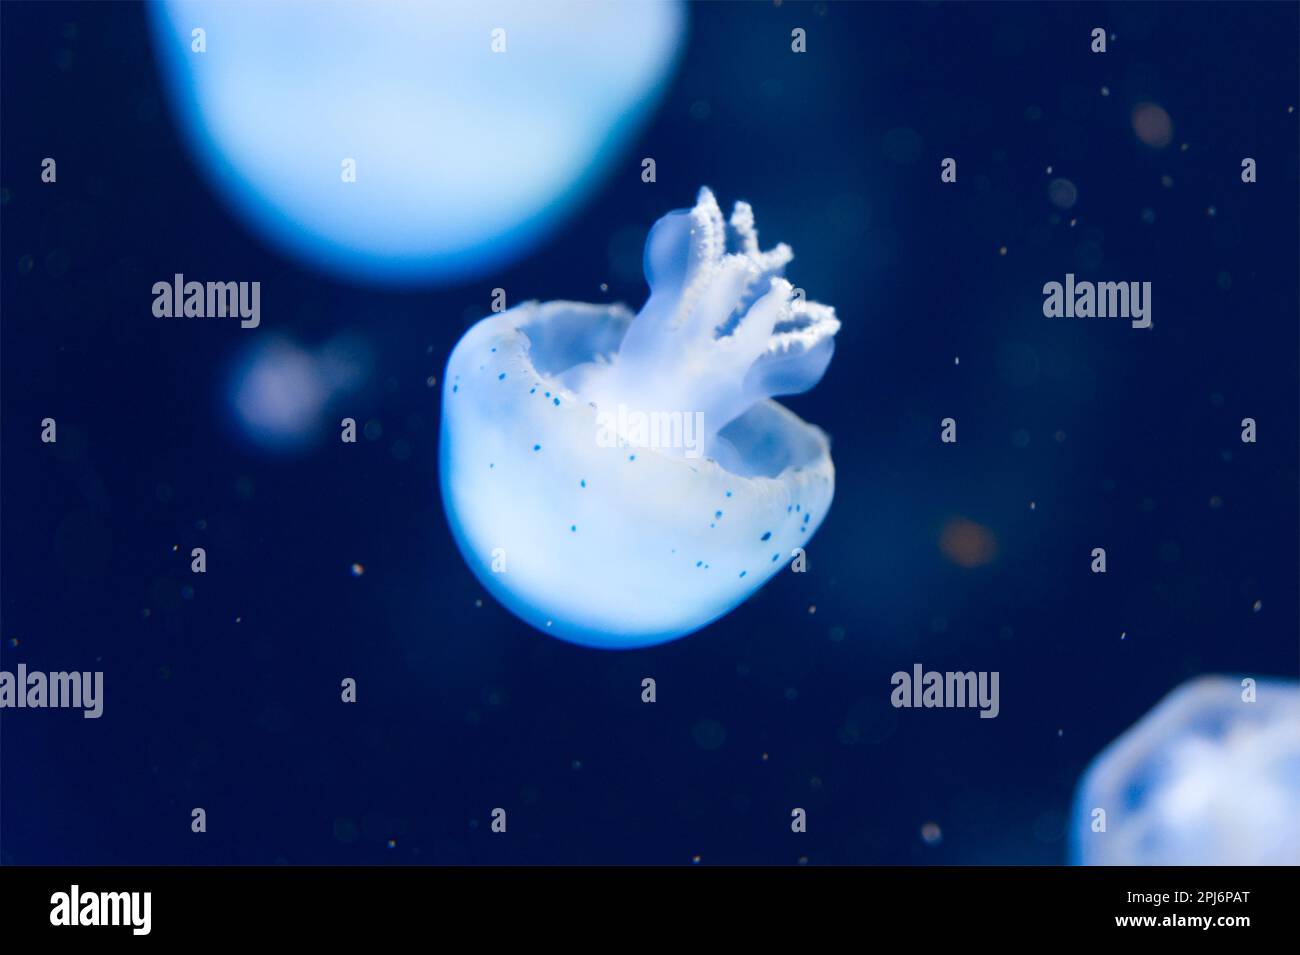 Méduses nageant calmement dans l'eau bleue belle image calme Banque D'Images